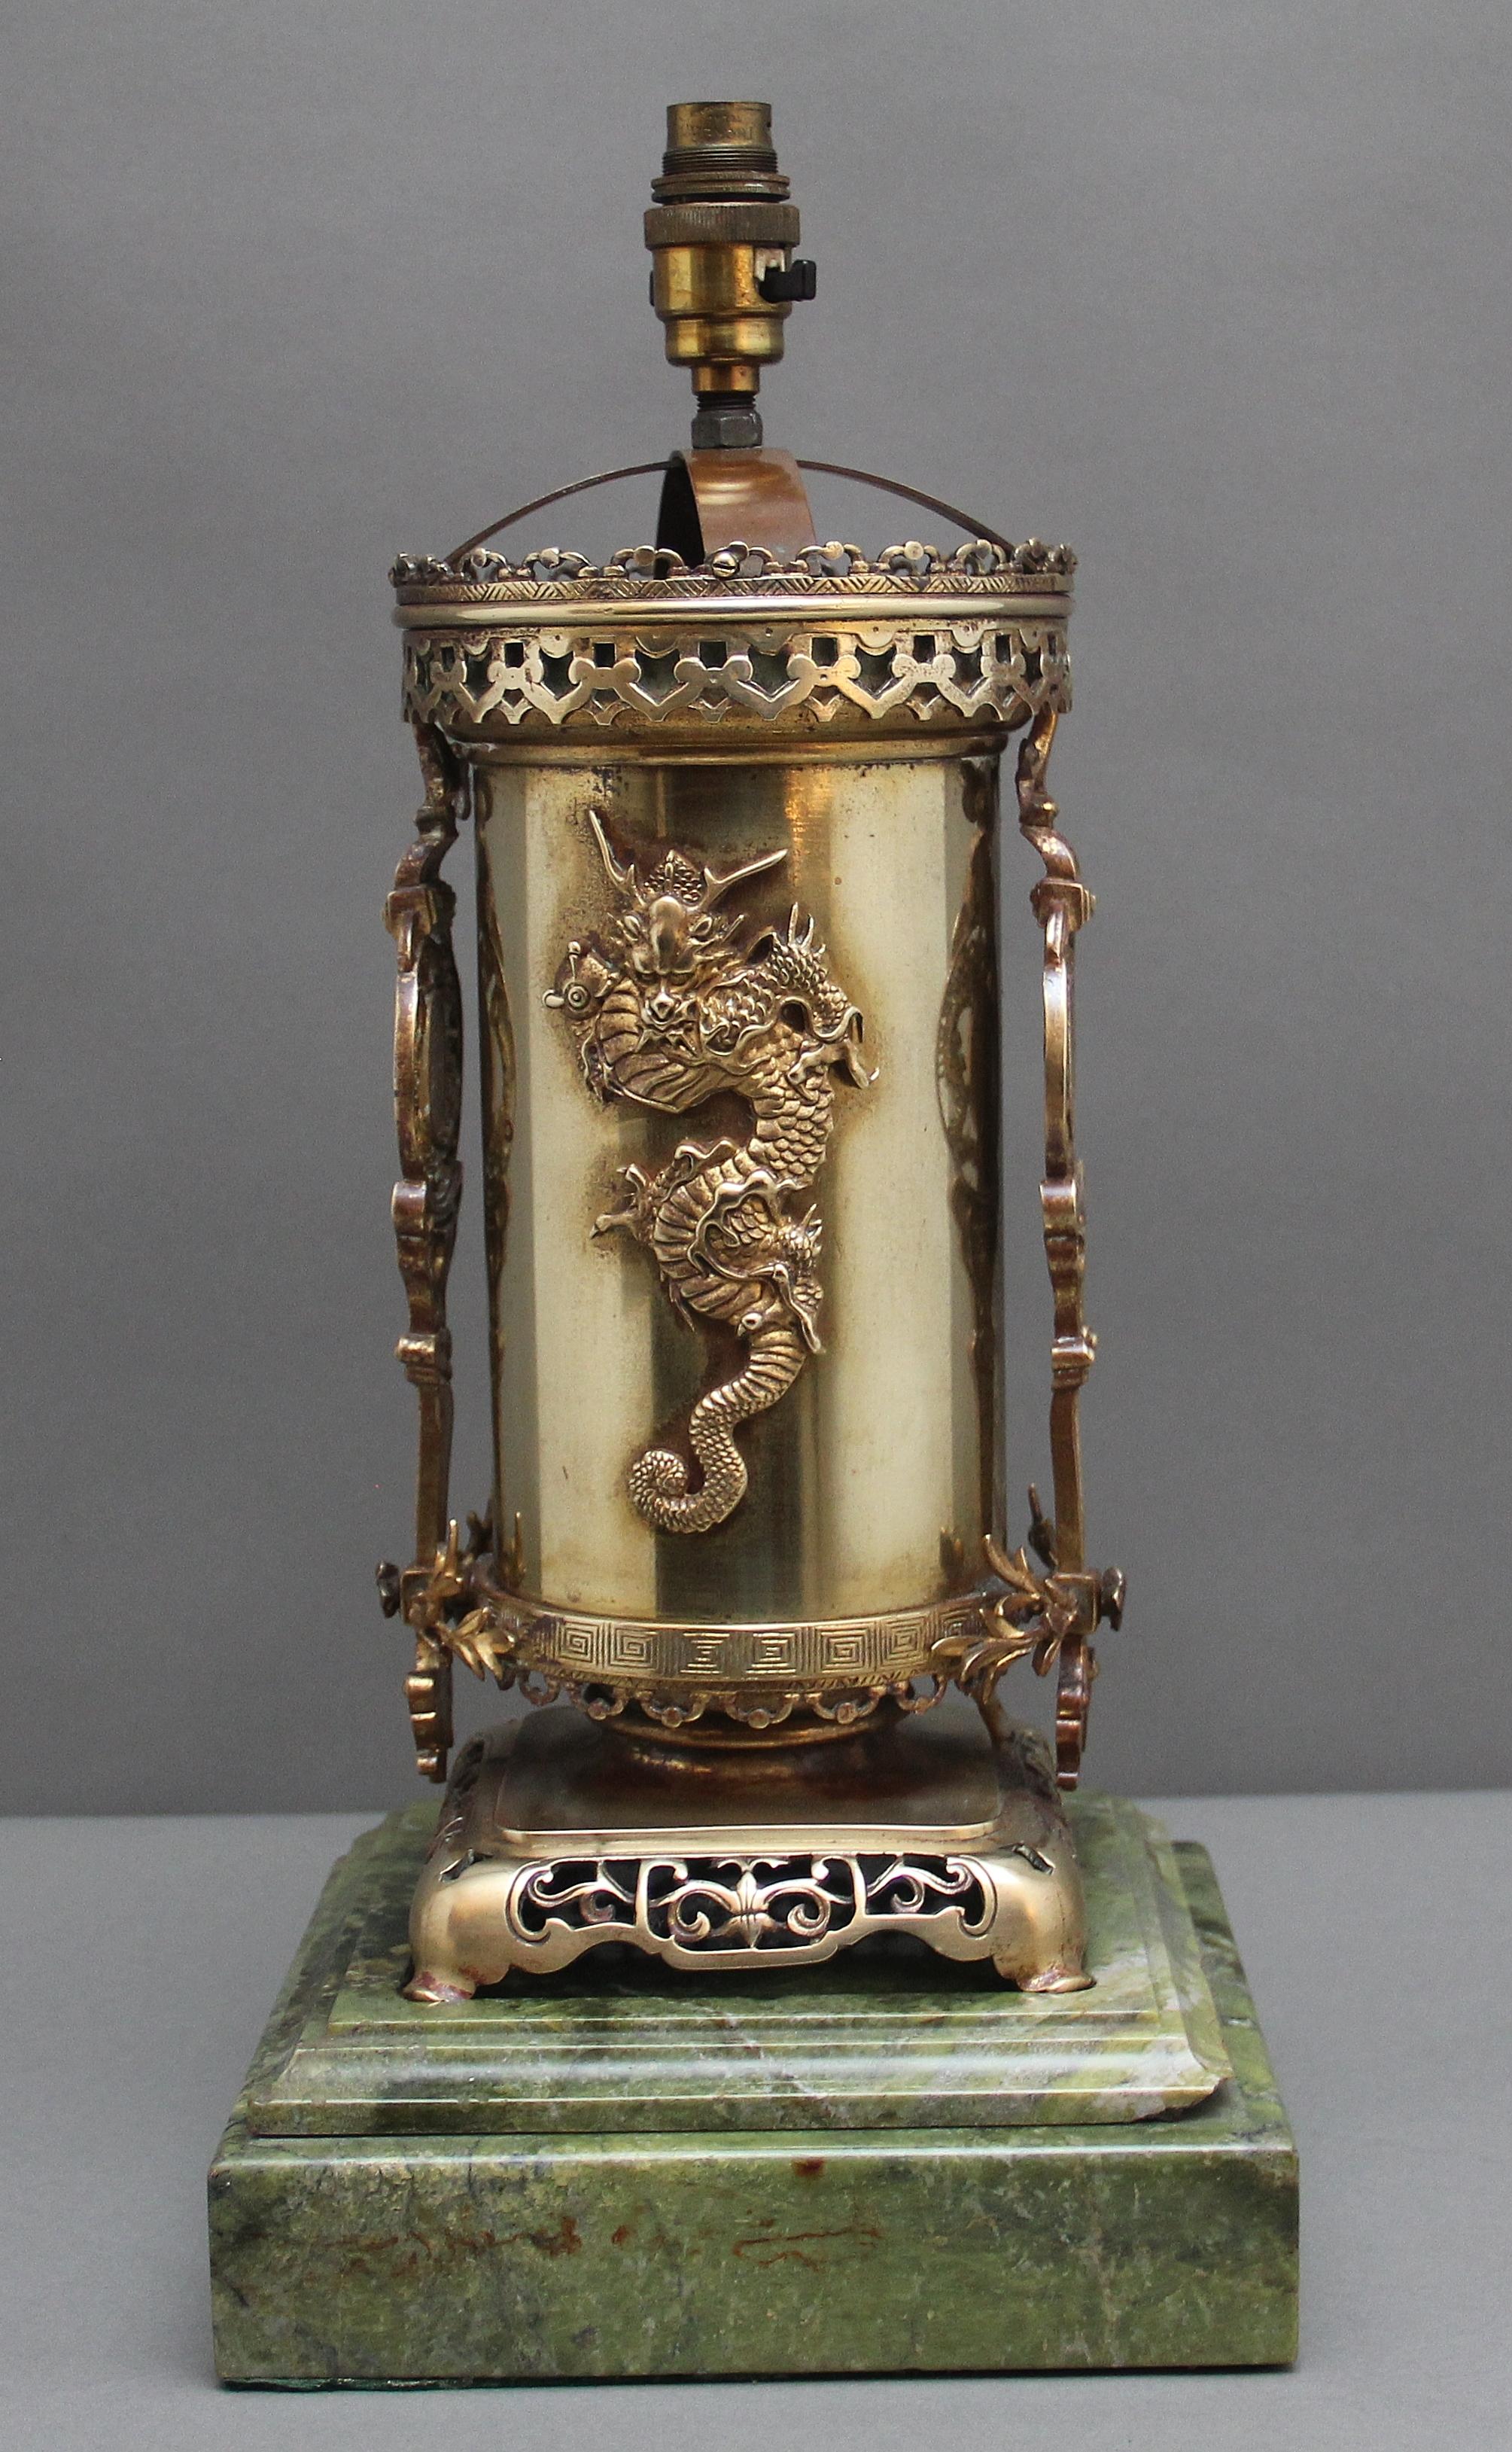 Eine schöne Qualität 19. Jahrhundert Japanisch  Lampe im orientalischen Stil, mit wilden Drachen und komplizierten durchbrochenen Verzierungen, auf einem Sockel aus grünem Marmor.  Für Elektrizität geeignet.   Um 1880.  Bitte beachten Sie, es gibt